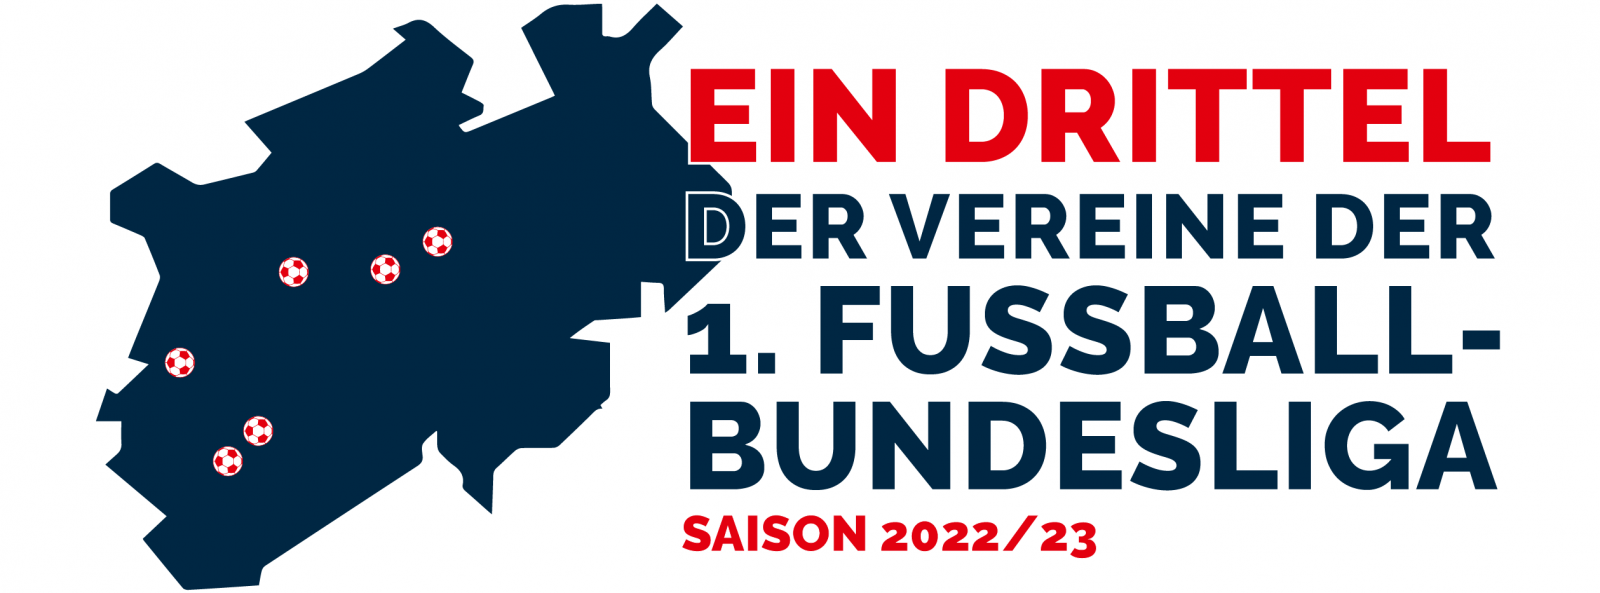 NRW-Landkarte mit Schriftzug ein Drittel der Vereine der 1. Fußball-Bundesliga